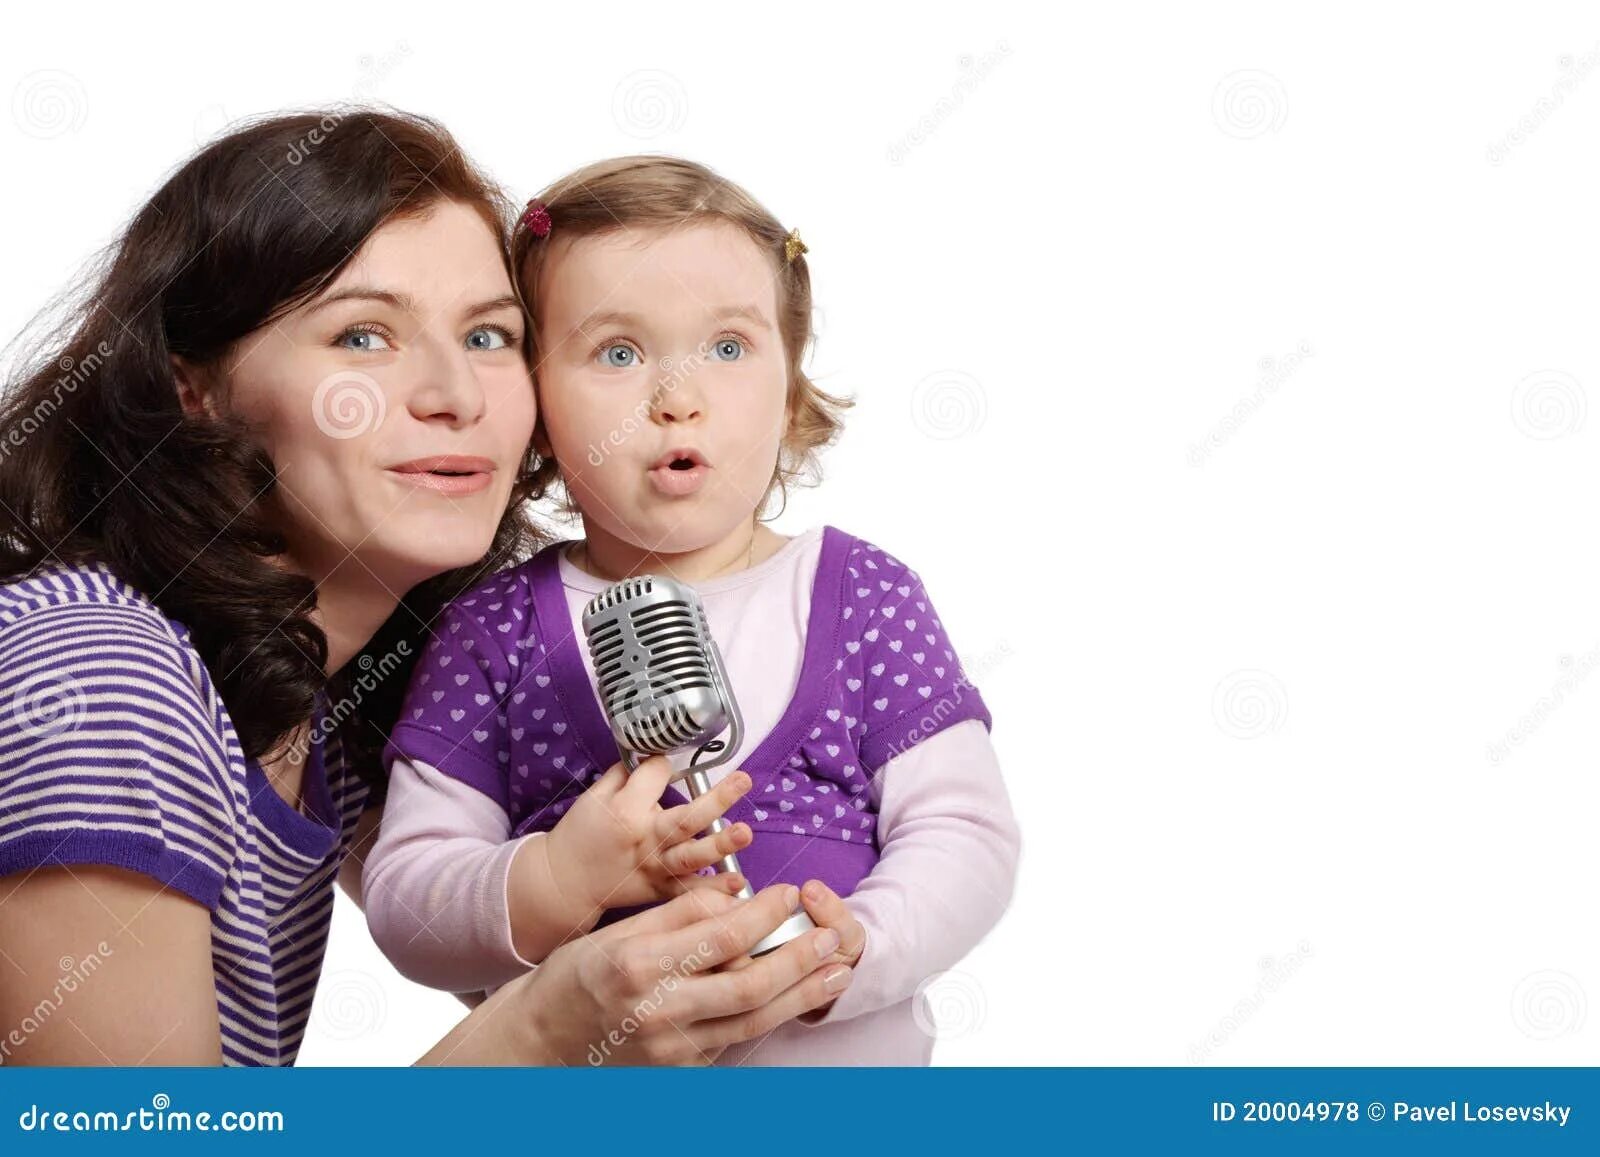 Песня про дочку пою. Мама поет ребенку. Мама с дочкой поют. Мама поет в микрофон. Ребенок с мамой поют вместе.